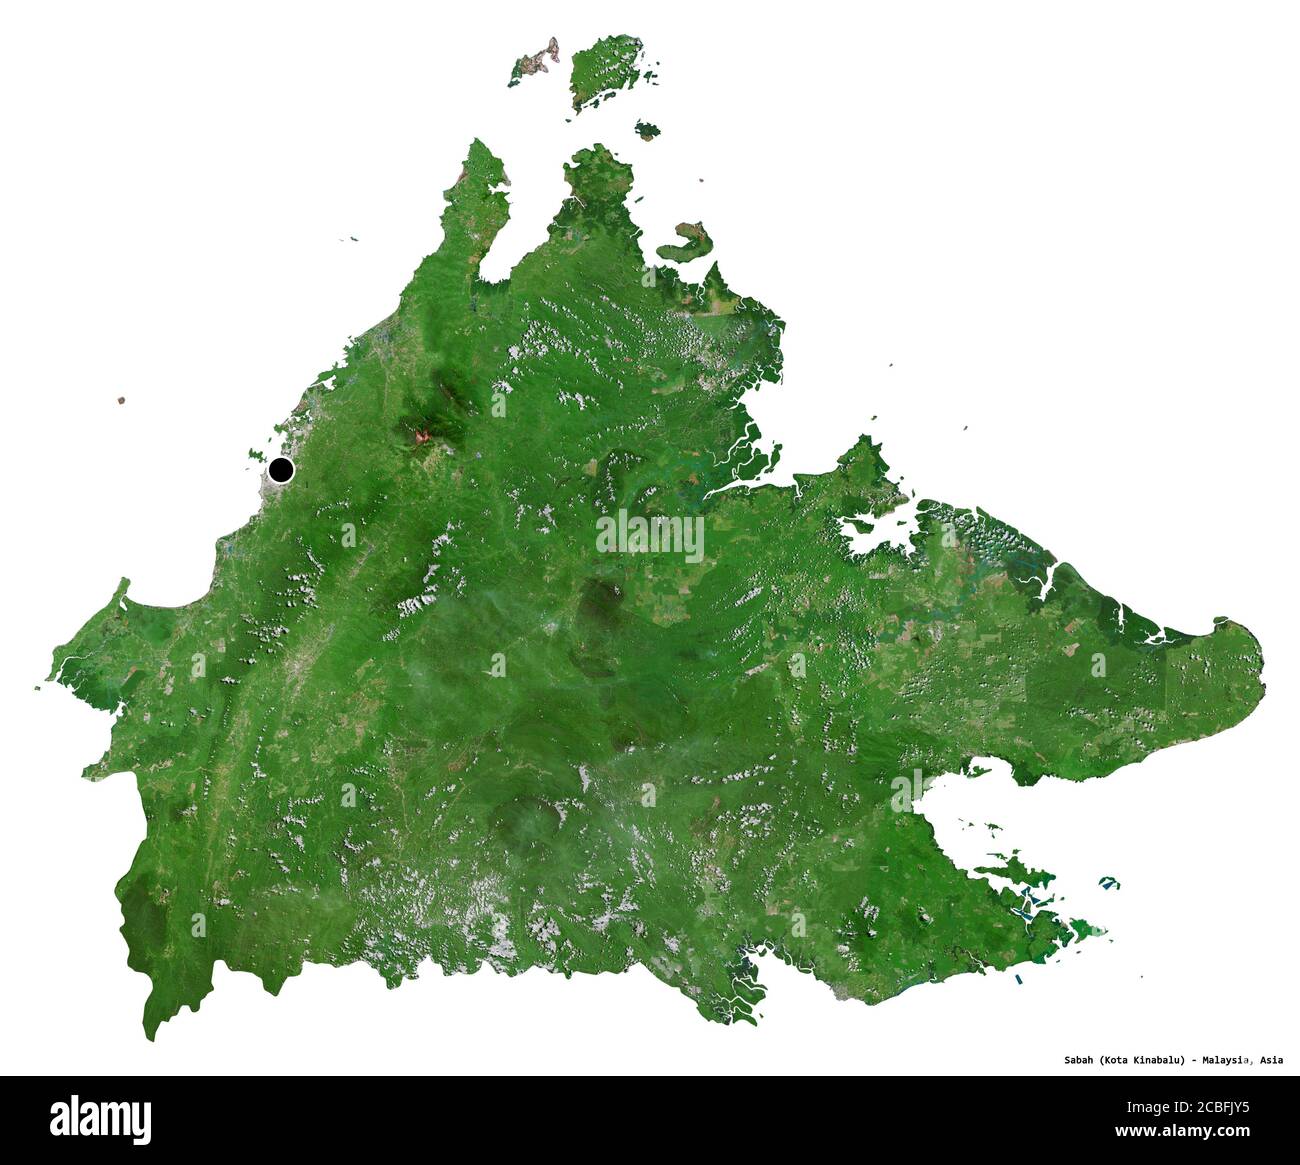 Forme de Sabah, État de Malaisie, avec sa capitale isolée sur fond blanc. Imagerie satellite. Rendu 3D Banque D'Images